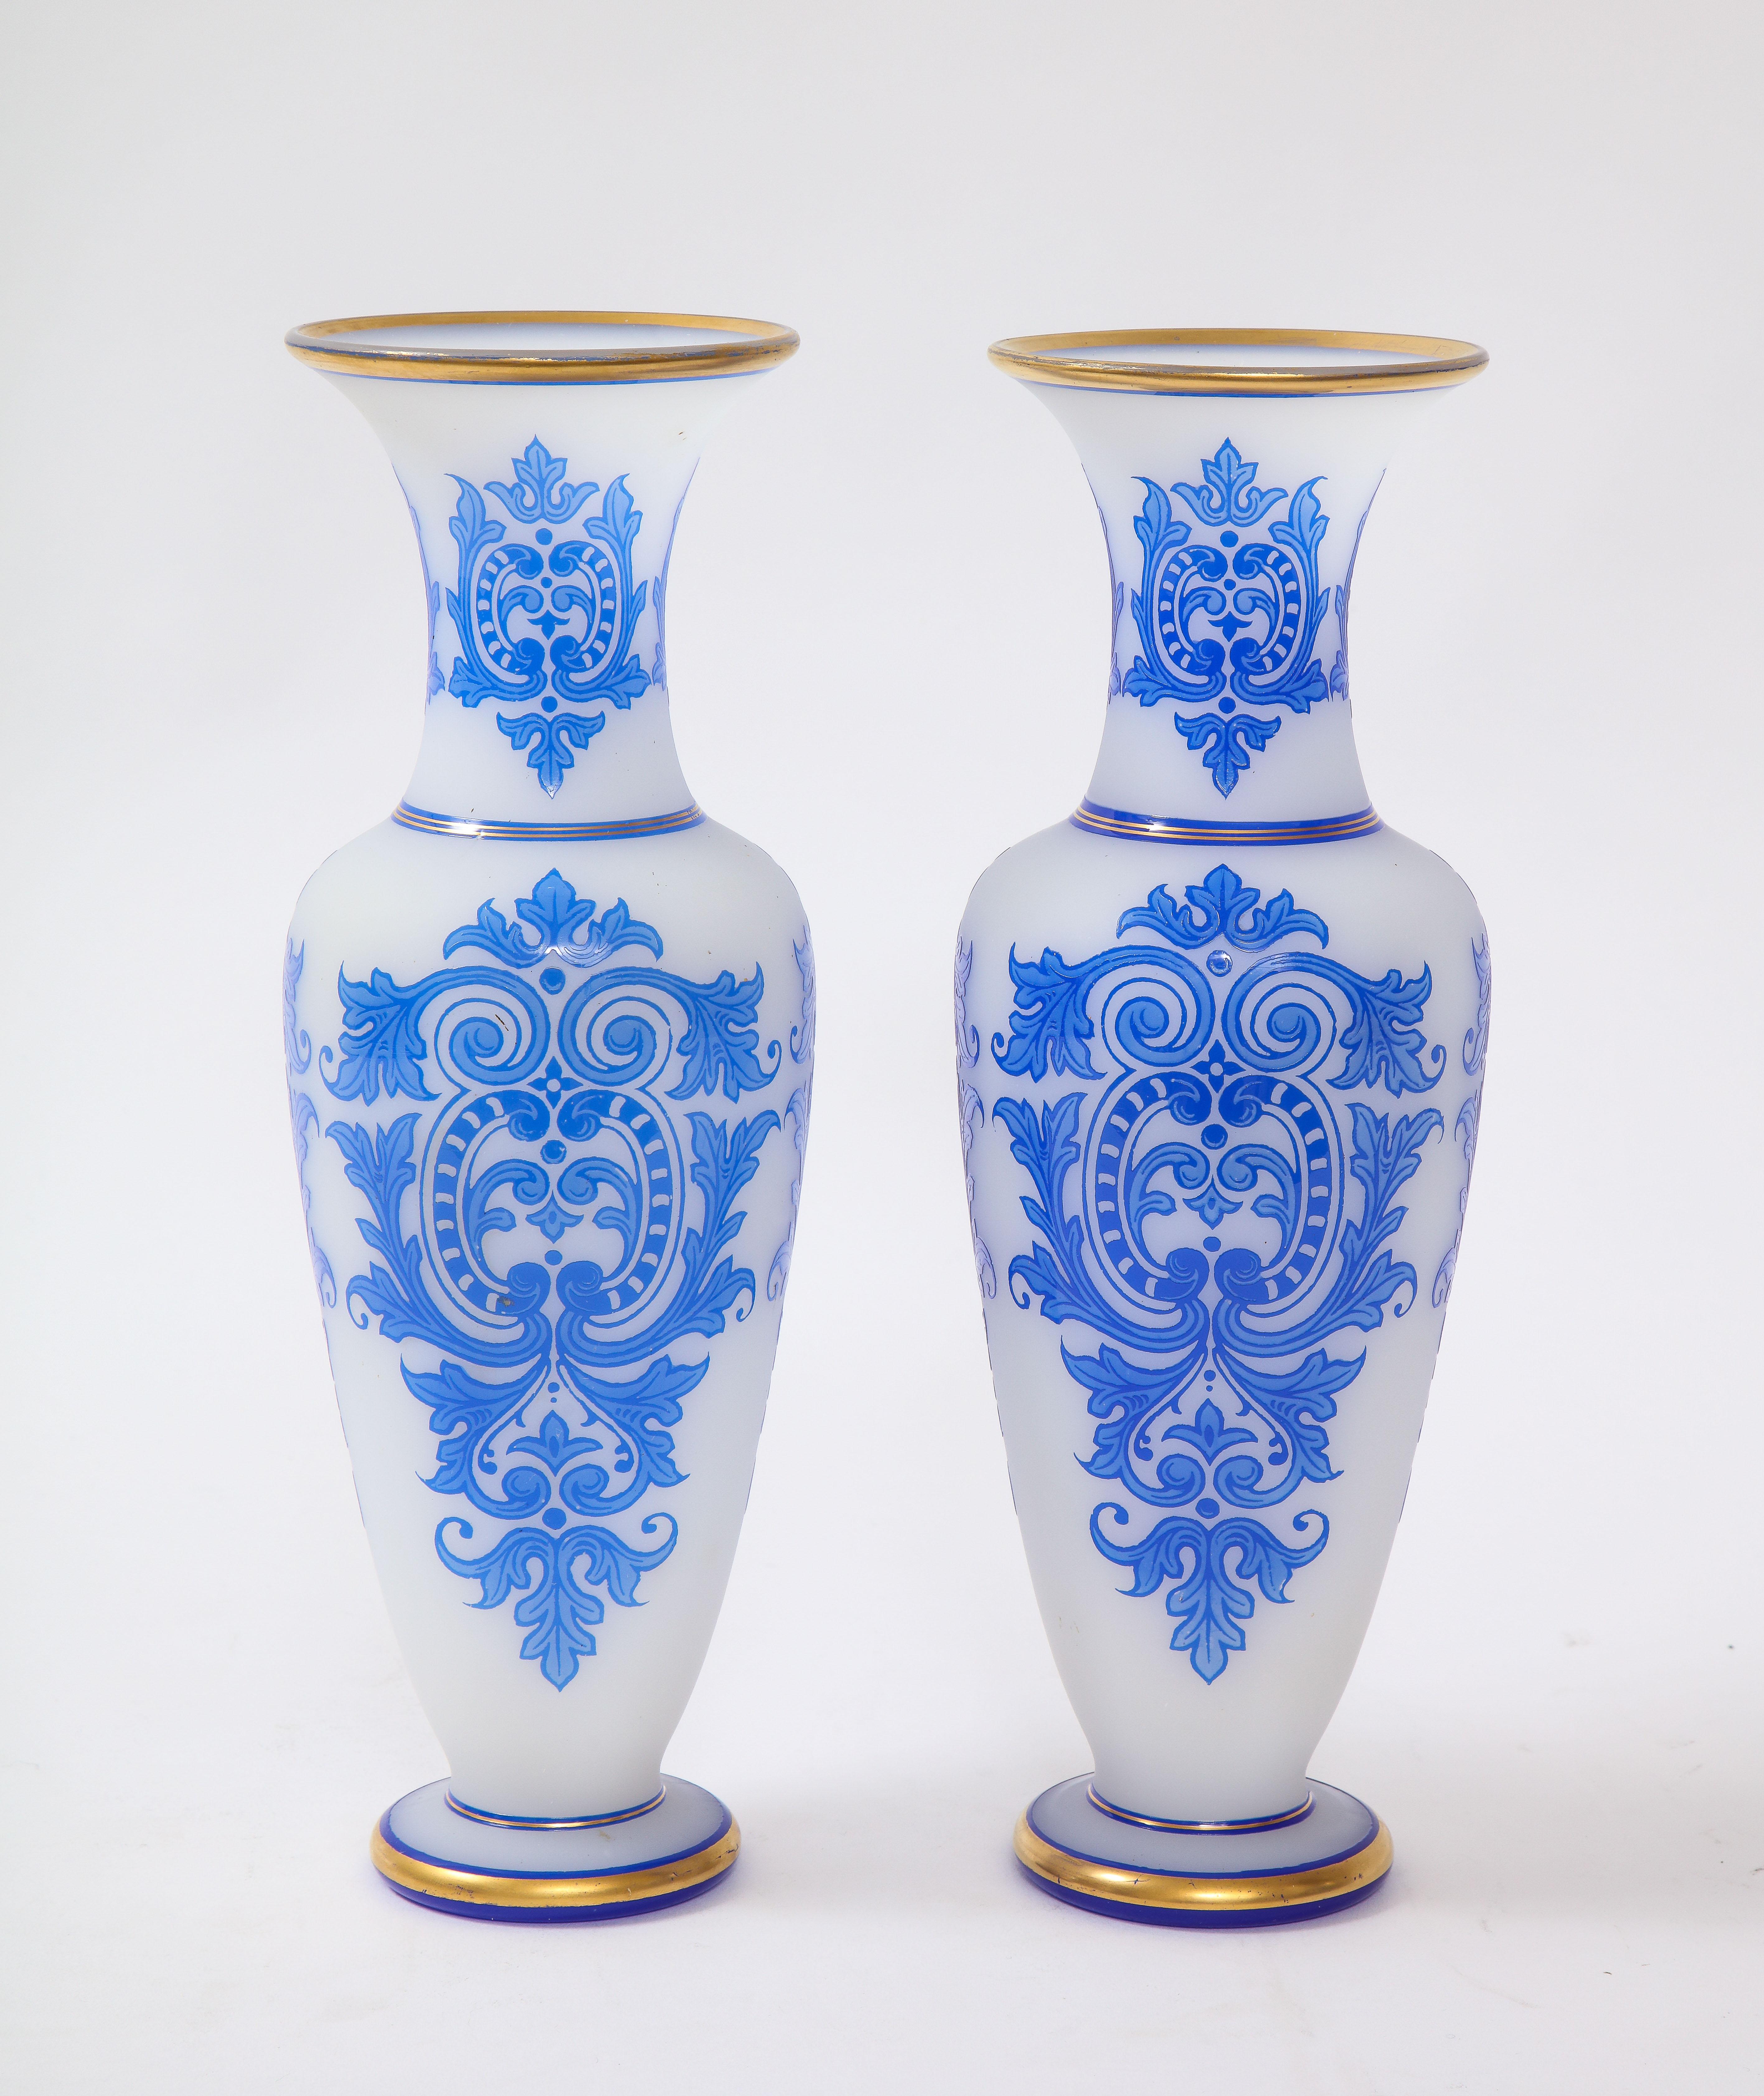 Une fabuleuse paire de vases Baccarat de style Louis XVI du 19ème siècle, à double recouvrement de bleu sur blanc opalin clair avec une décoration en or peint à la main 24k. Chaque vase est de forme élancée avec un fond blanc opalescent et un